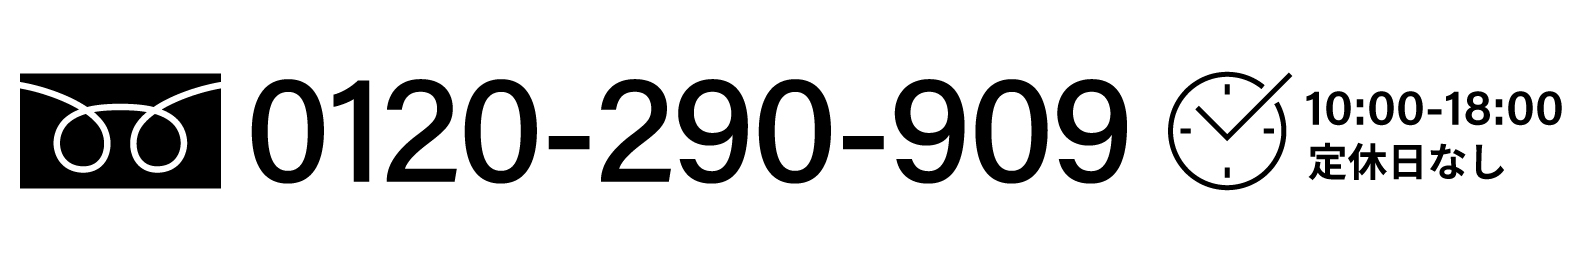 0120-290-909